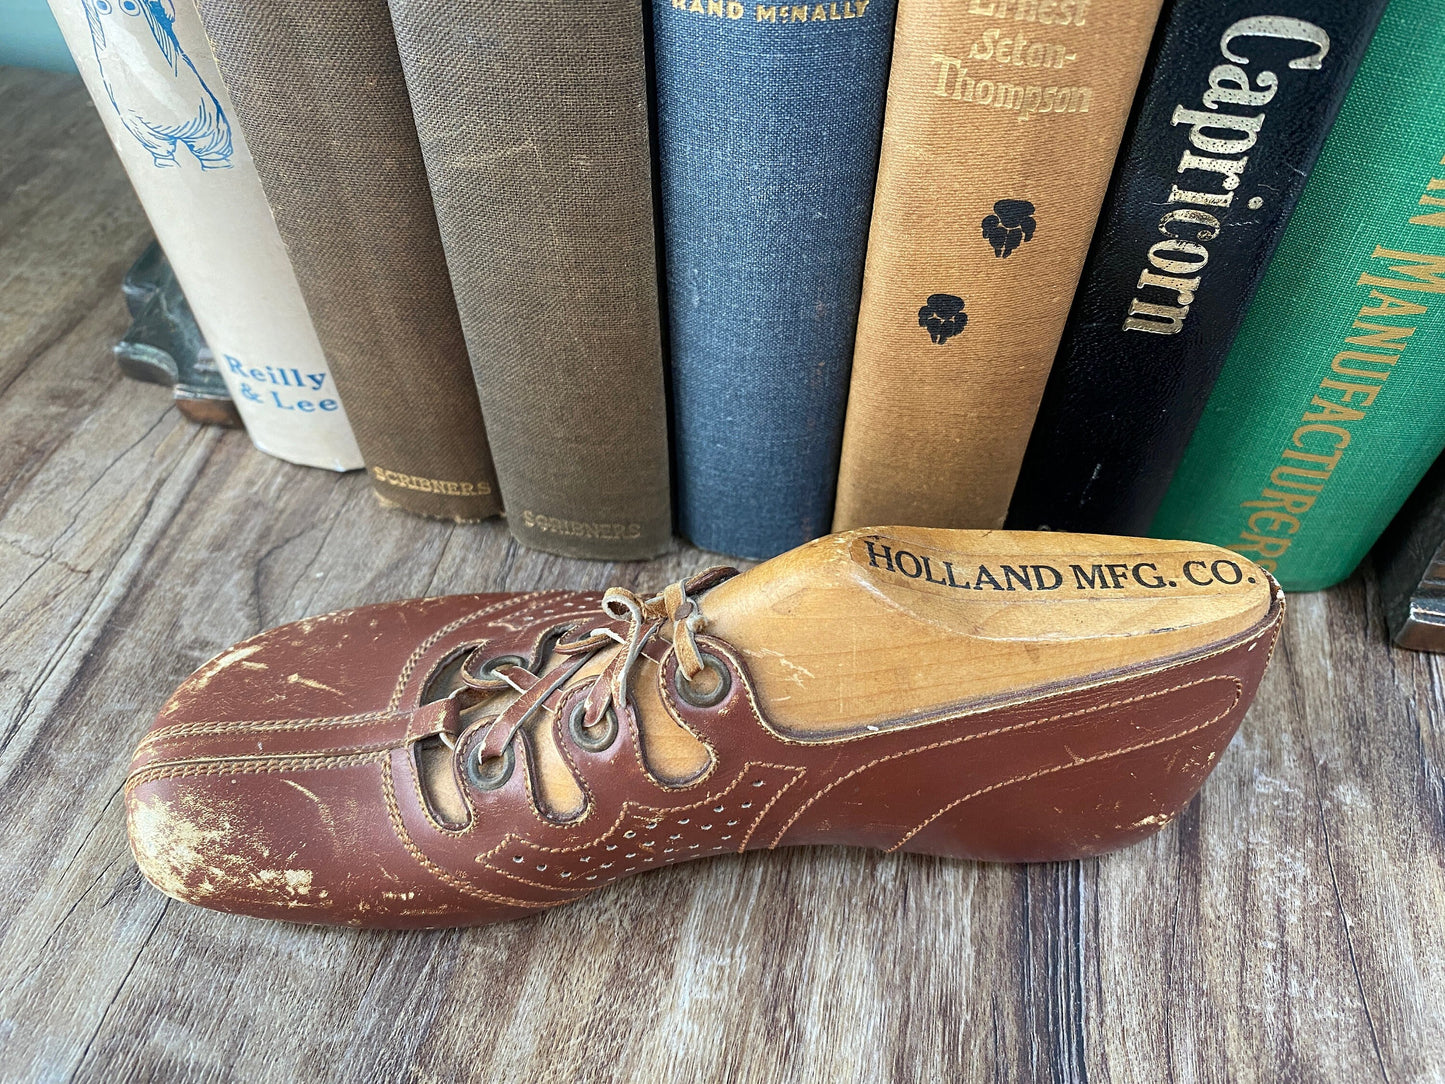 Vintage Child's Wood Shoe Manufacturer's Sample